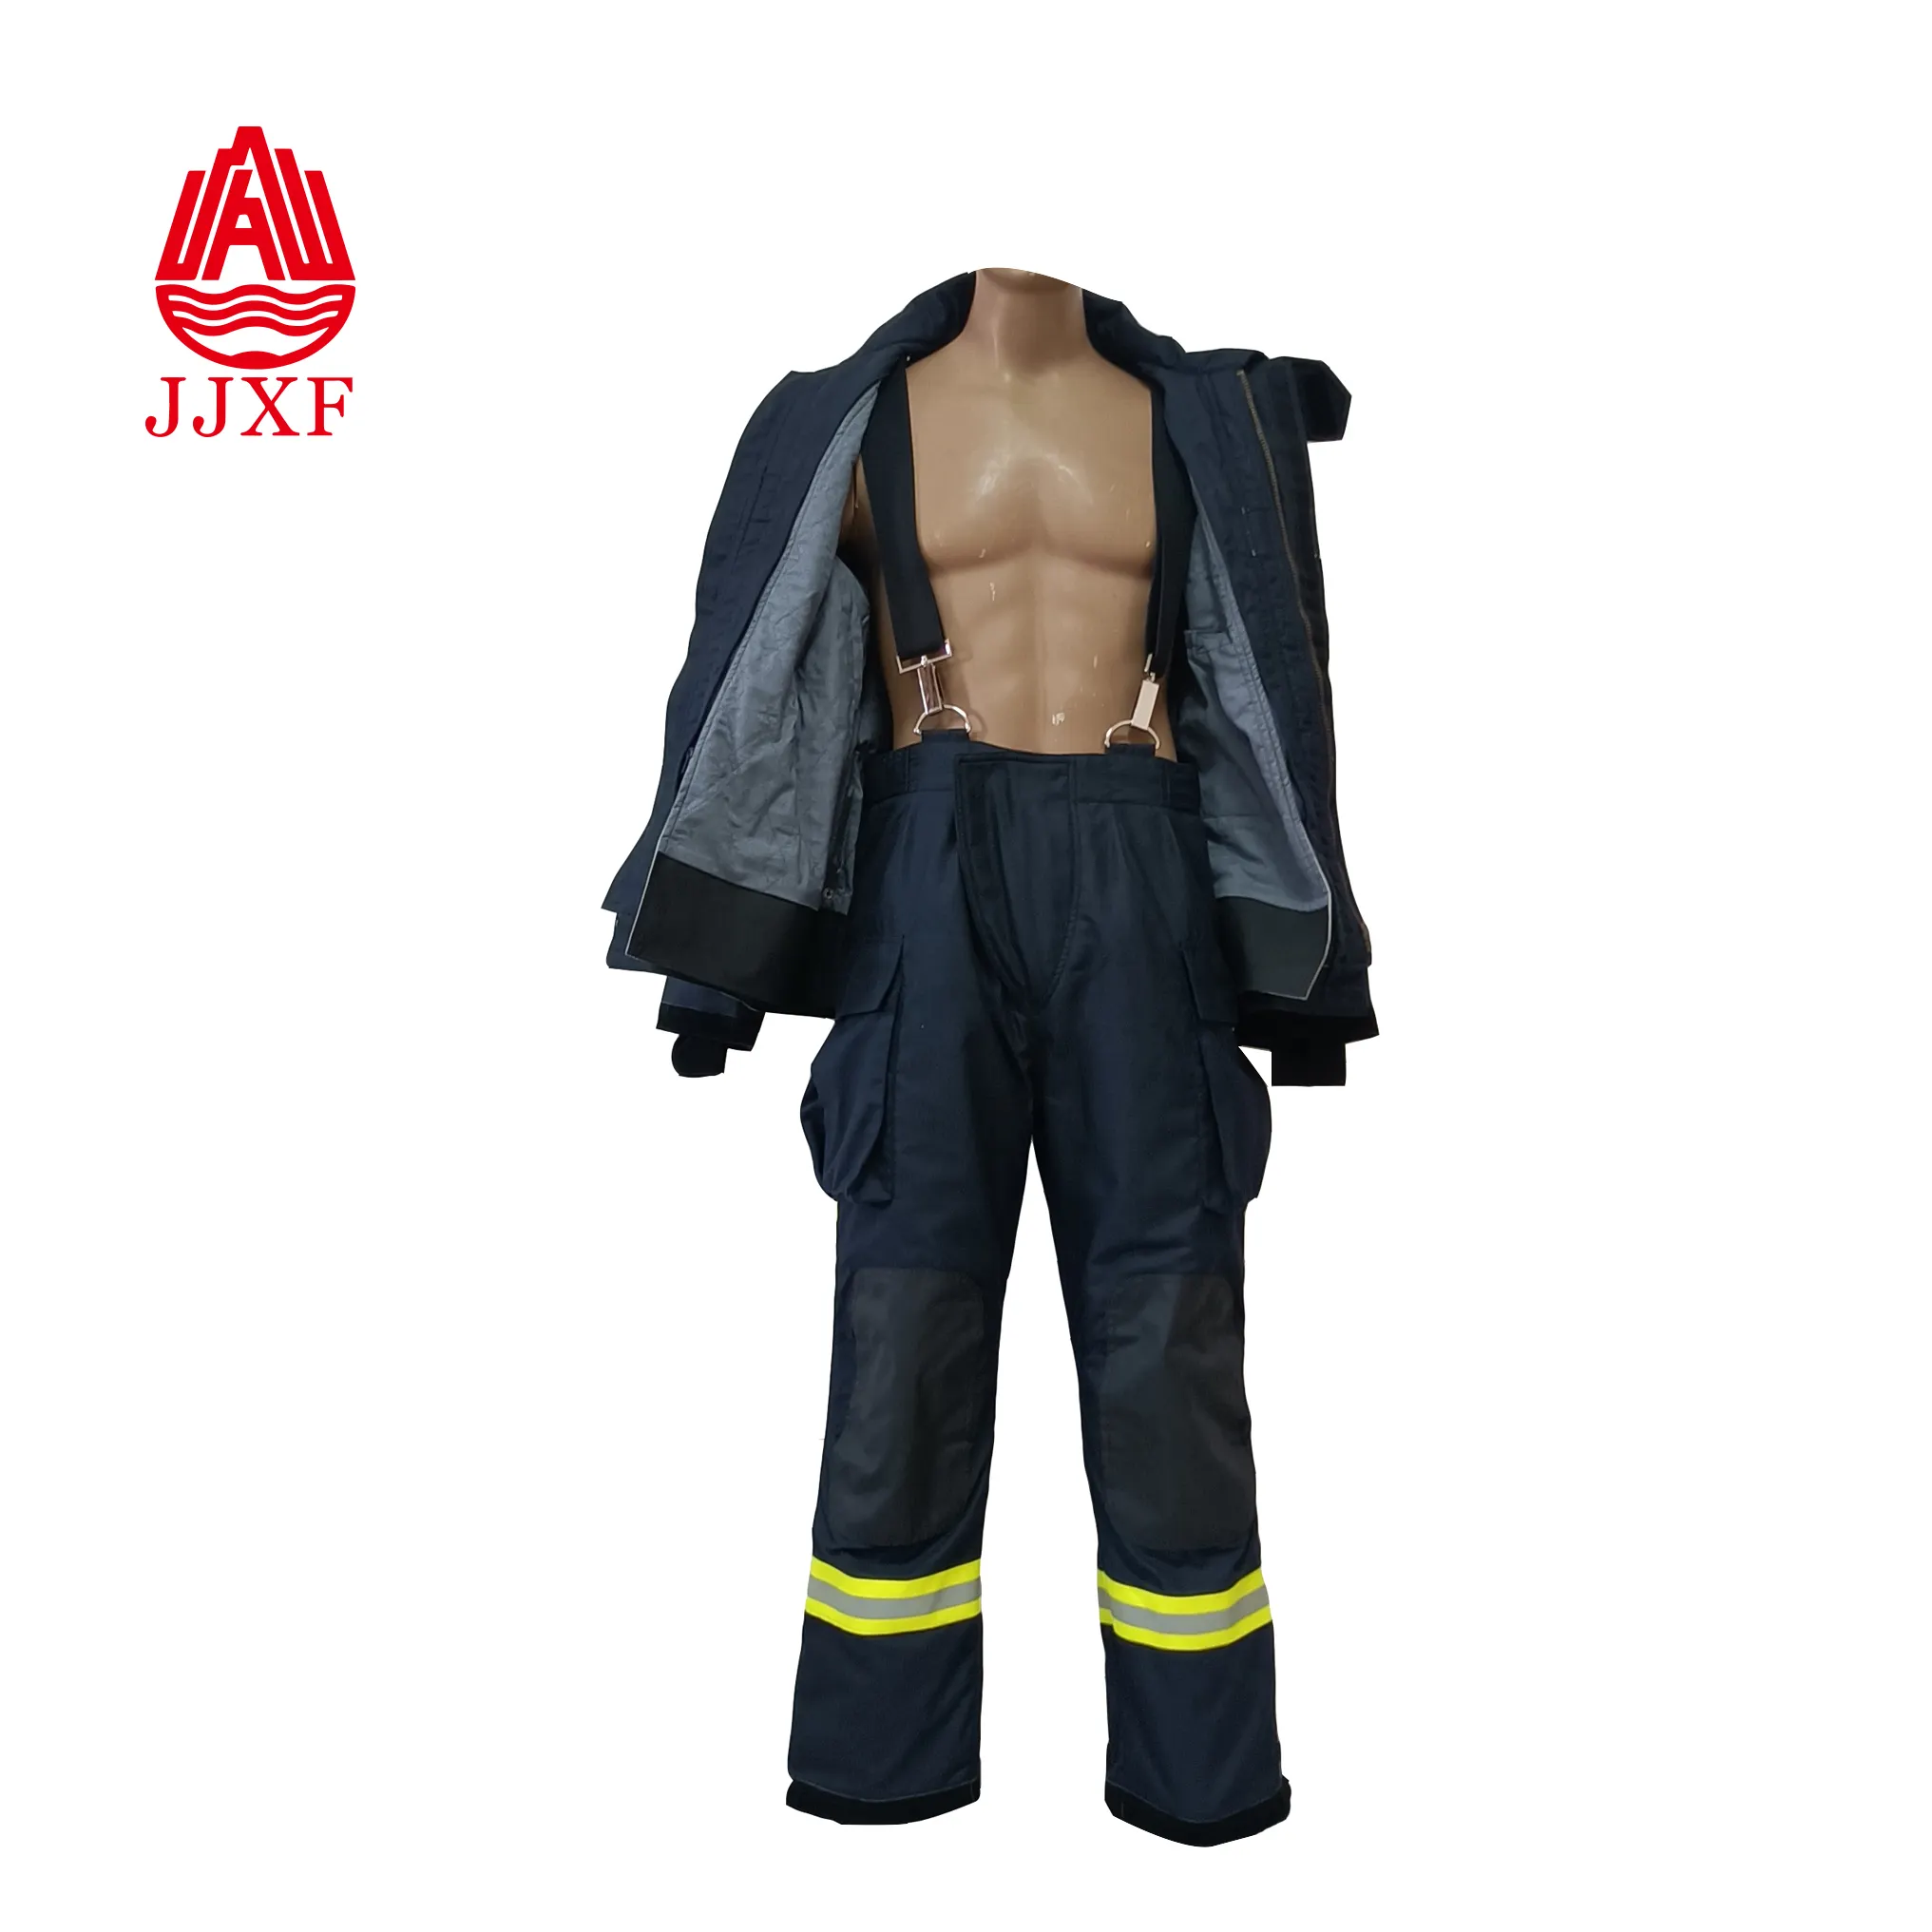 Fireman Suit EN469 Certified fire uniforms